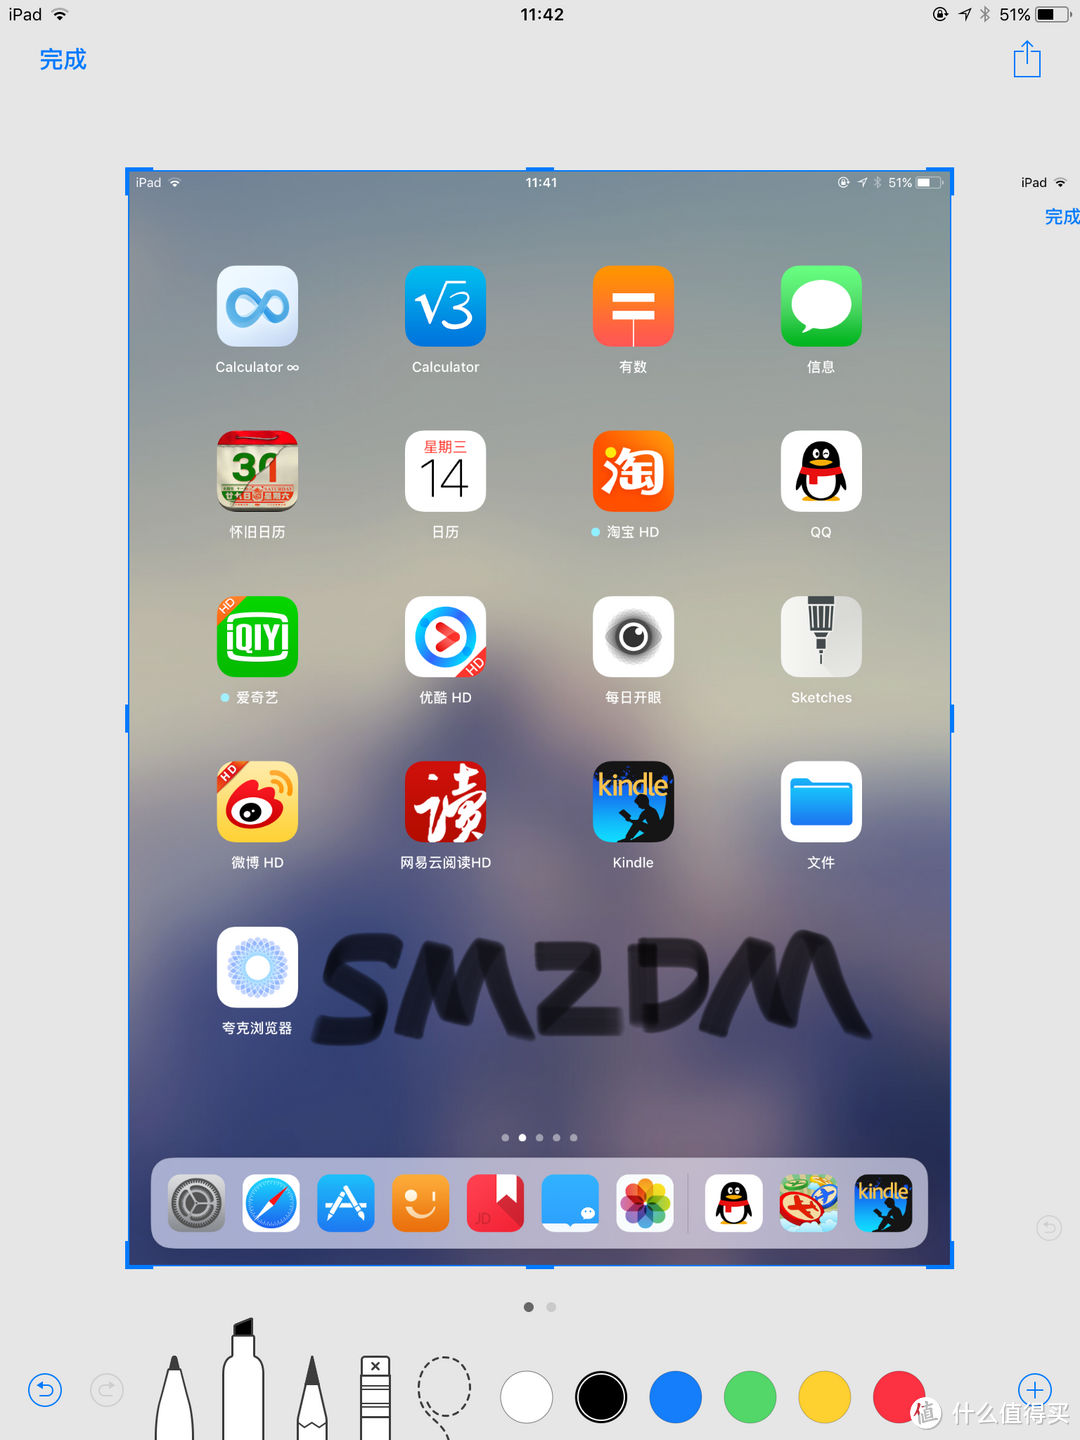 全新尺寸10.5英寸 iPad Pro 简单开箱